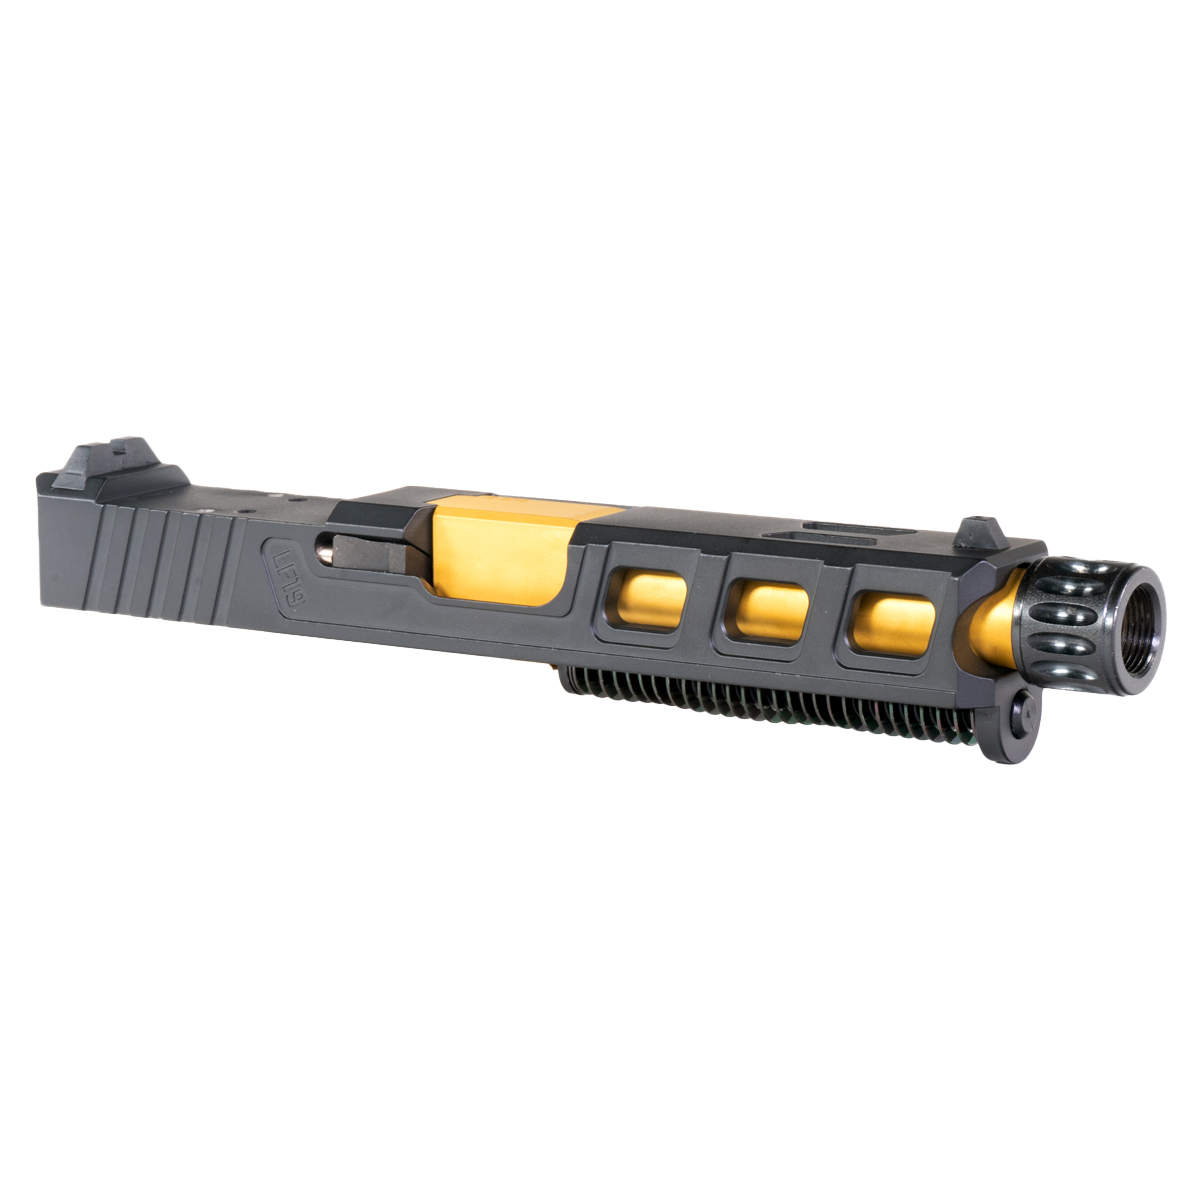 DD 'Auge' 9mm Complete Slide Kit - Glock 19 Gen 1-3 Compatible